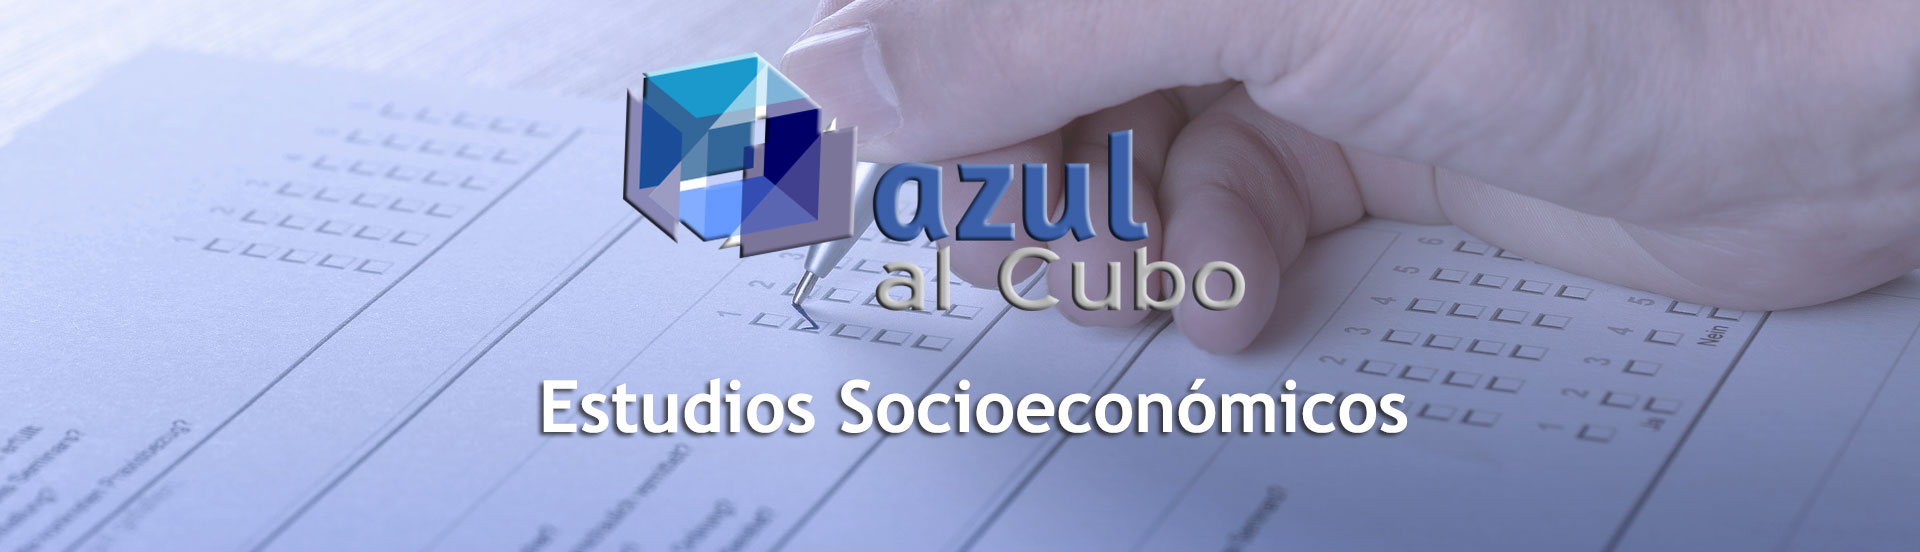 Estudios Socioeconómicos